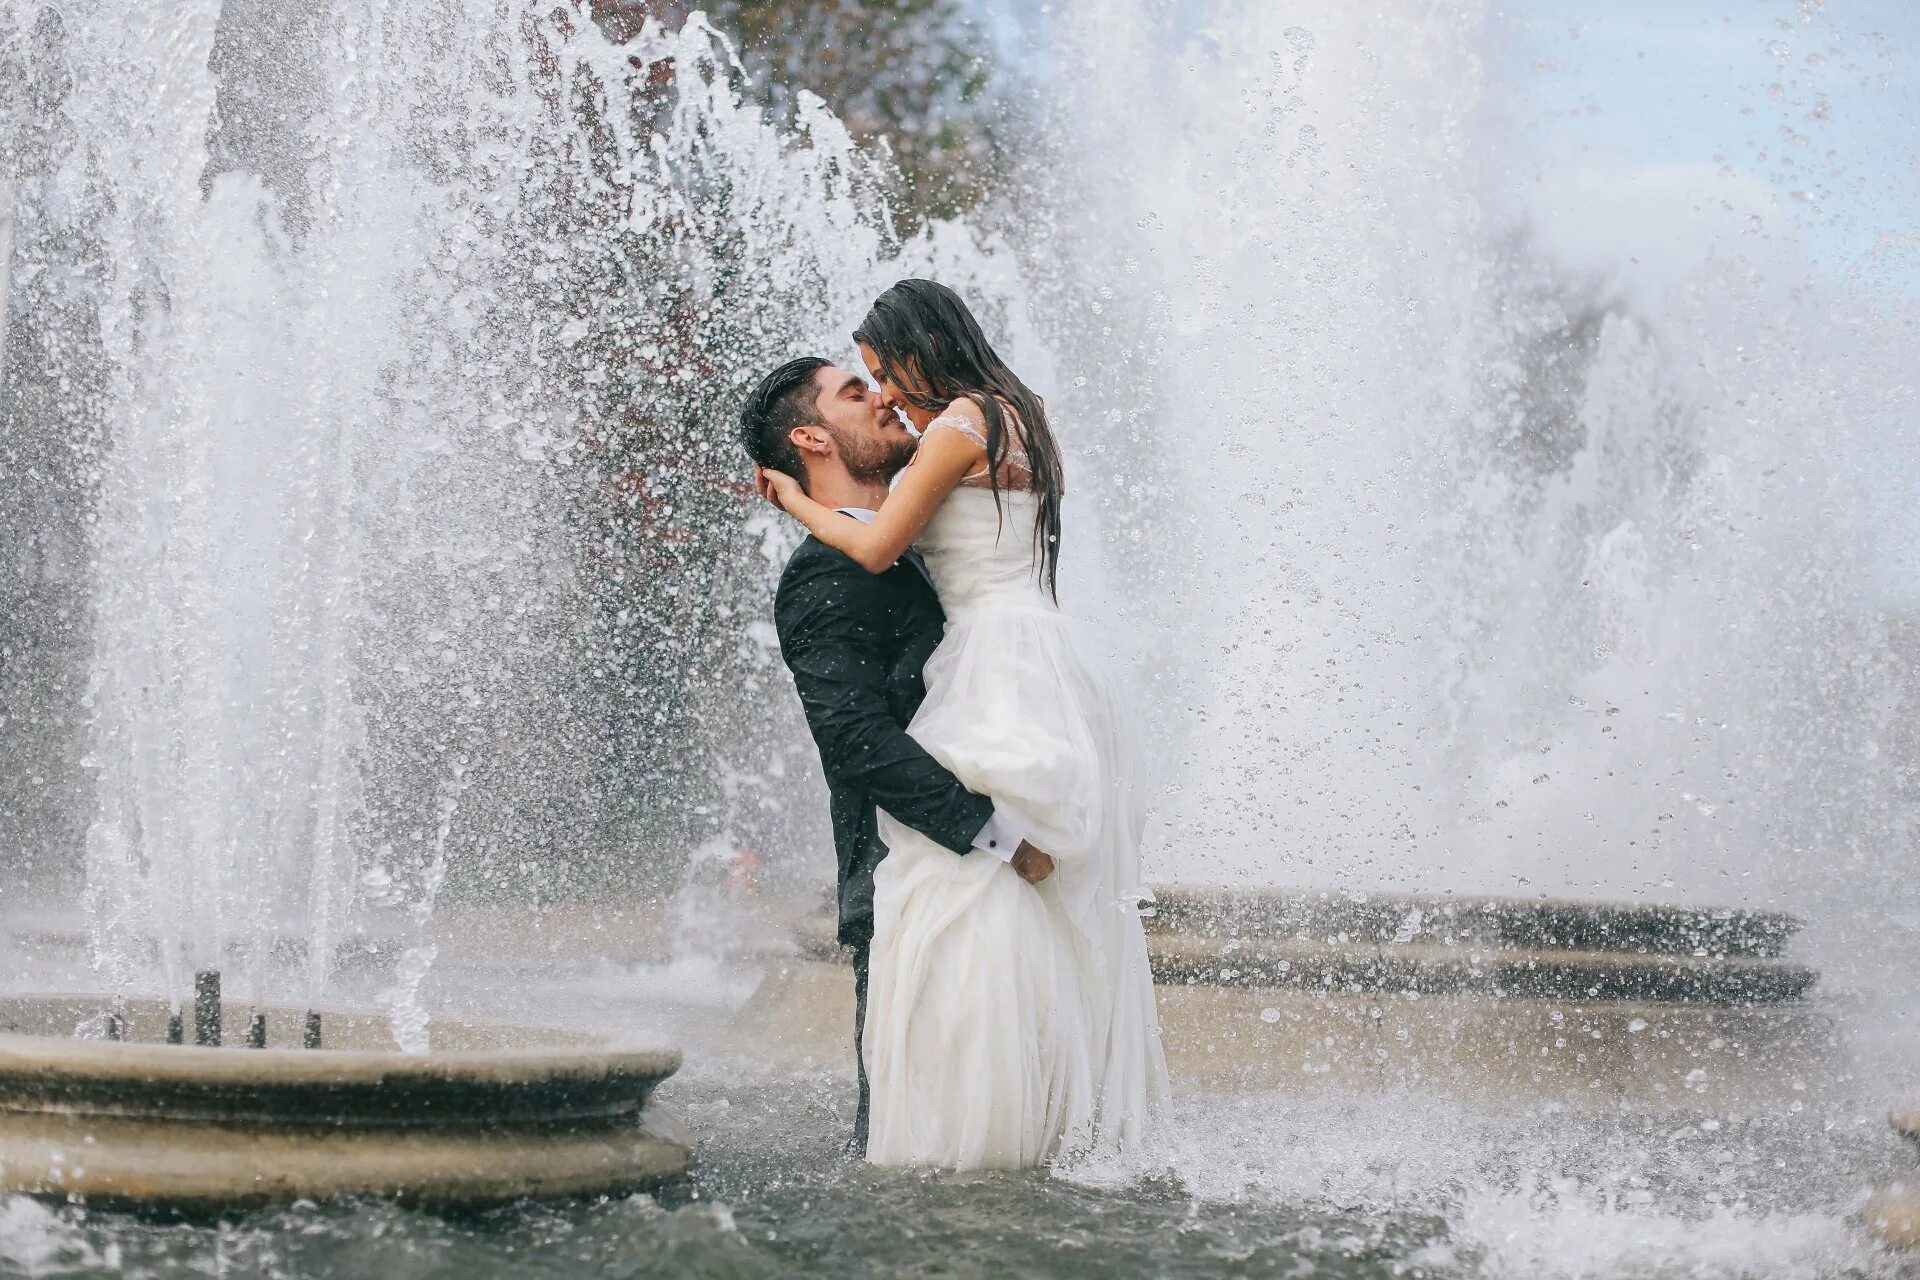 Романтика в воздухе. Невеста в фонтане. Свадебная фотосессия у фонтана. Поцелуй у фонтана. Фонтан влюбленные.